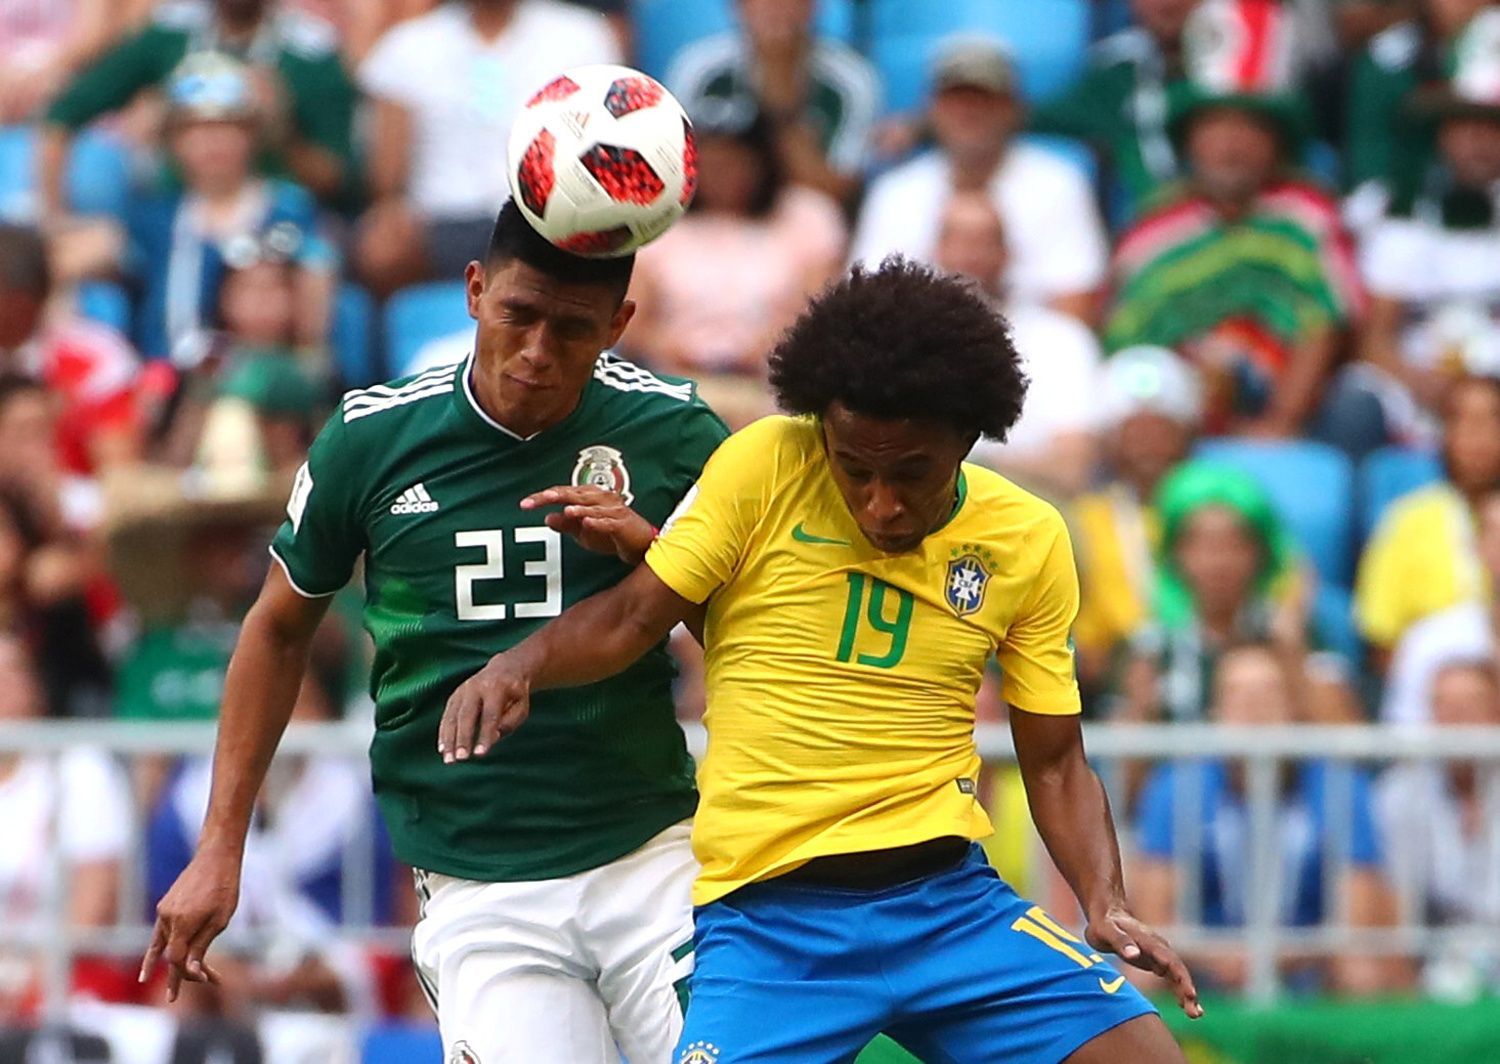 Jesús Gallardo a Willian v zápase Mexiko - Brazílie na MS 2018